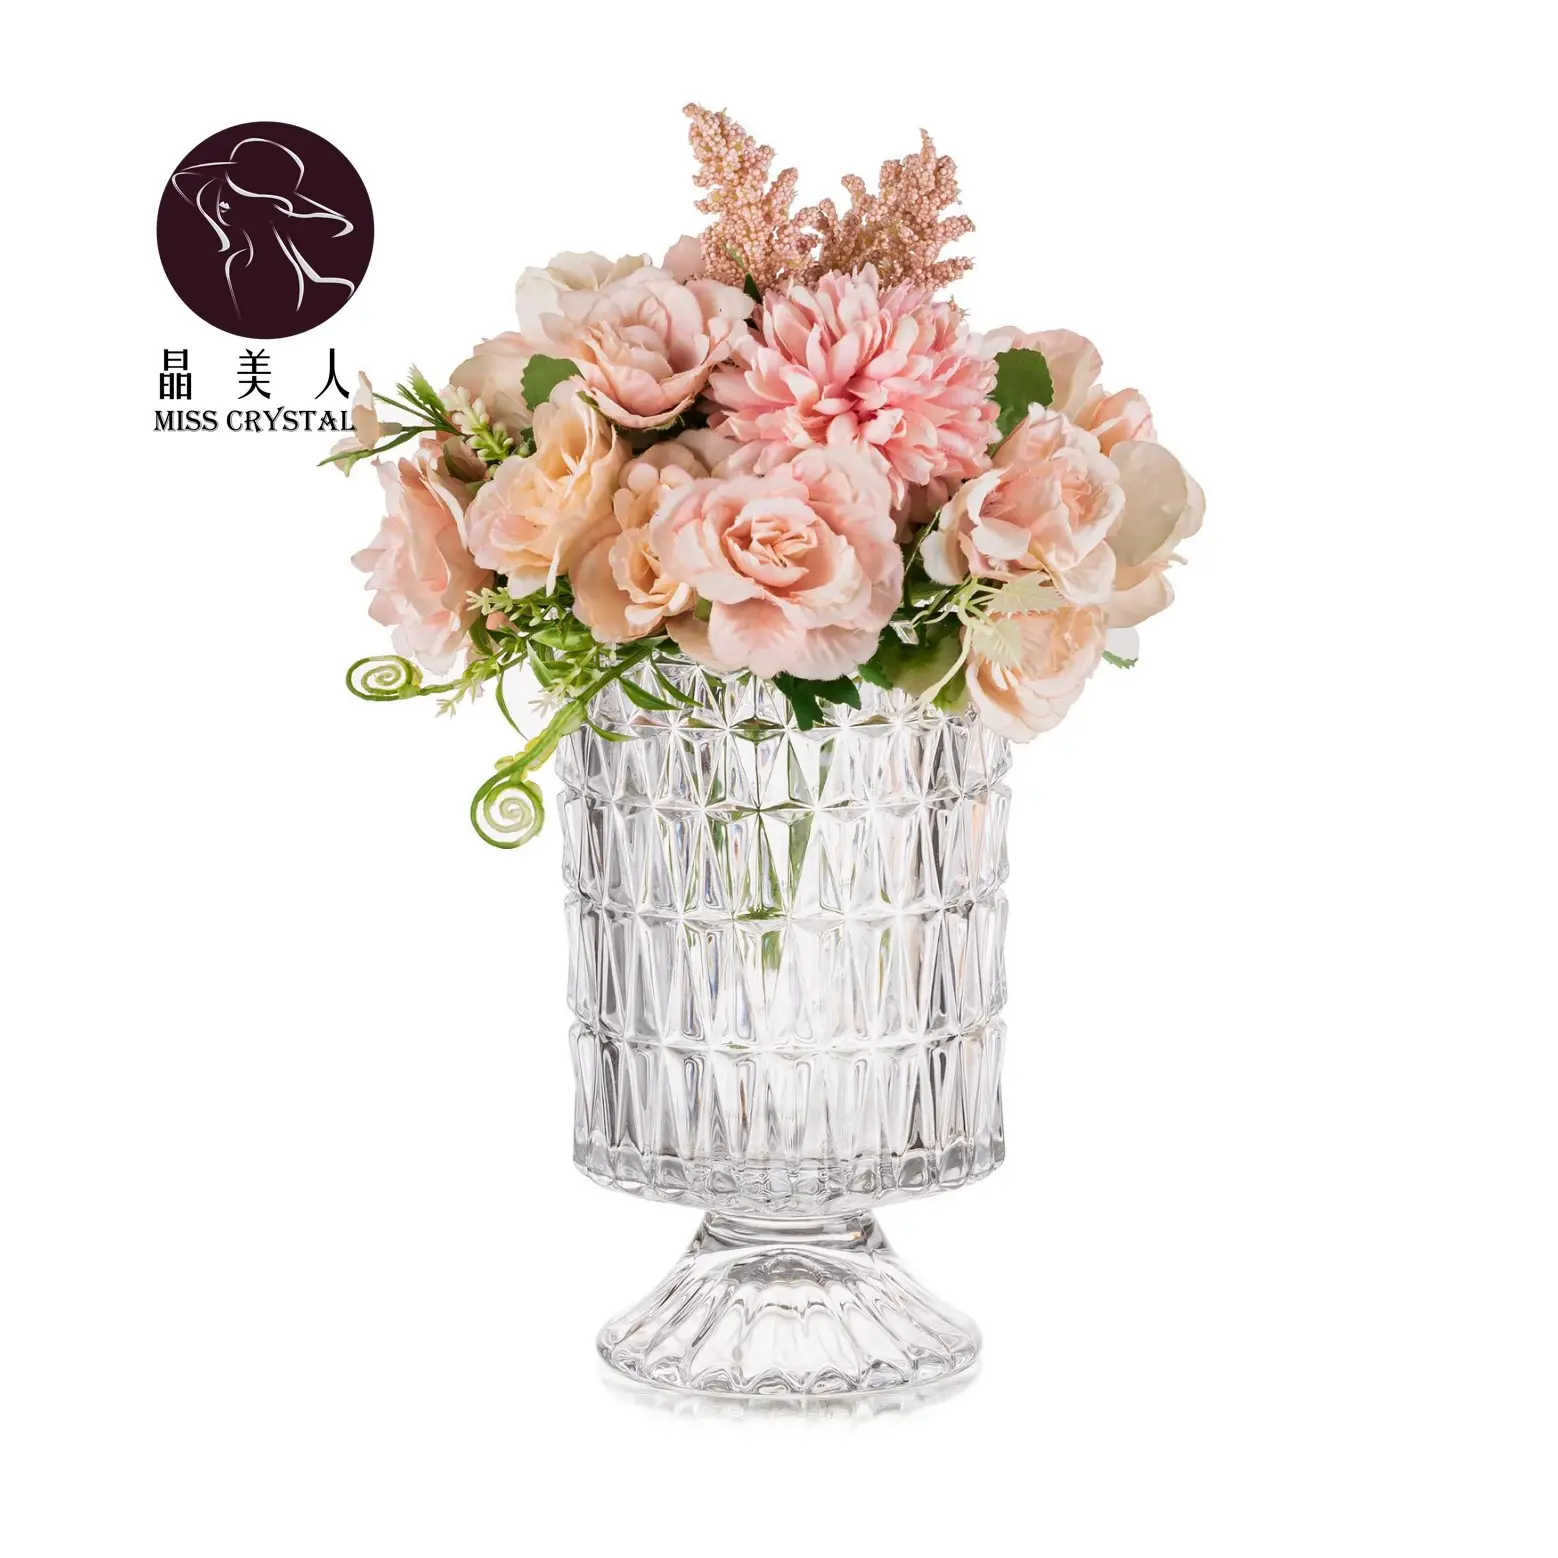 Klasik yuvarlak çiçekler vazo 4 stilleri şeffaf düğün dekorasyon Centerpiece silindir cam vazo